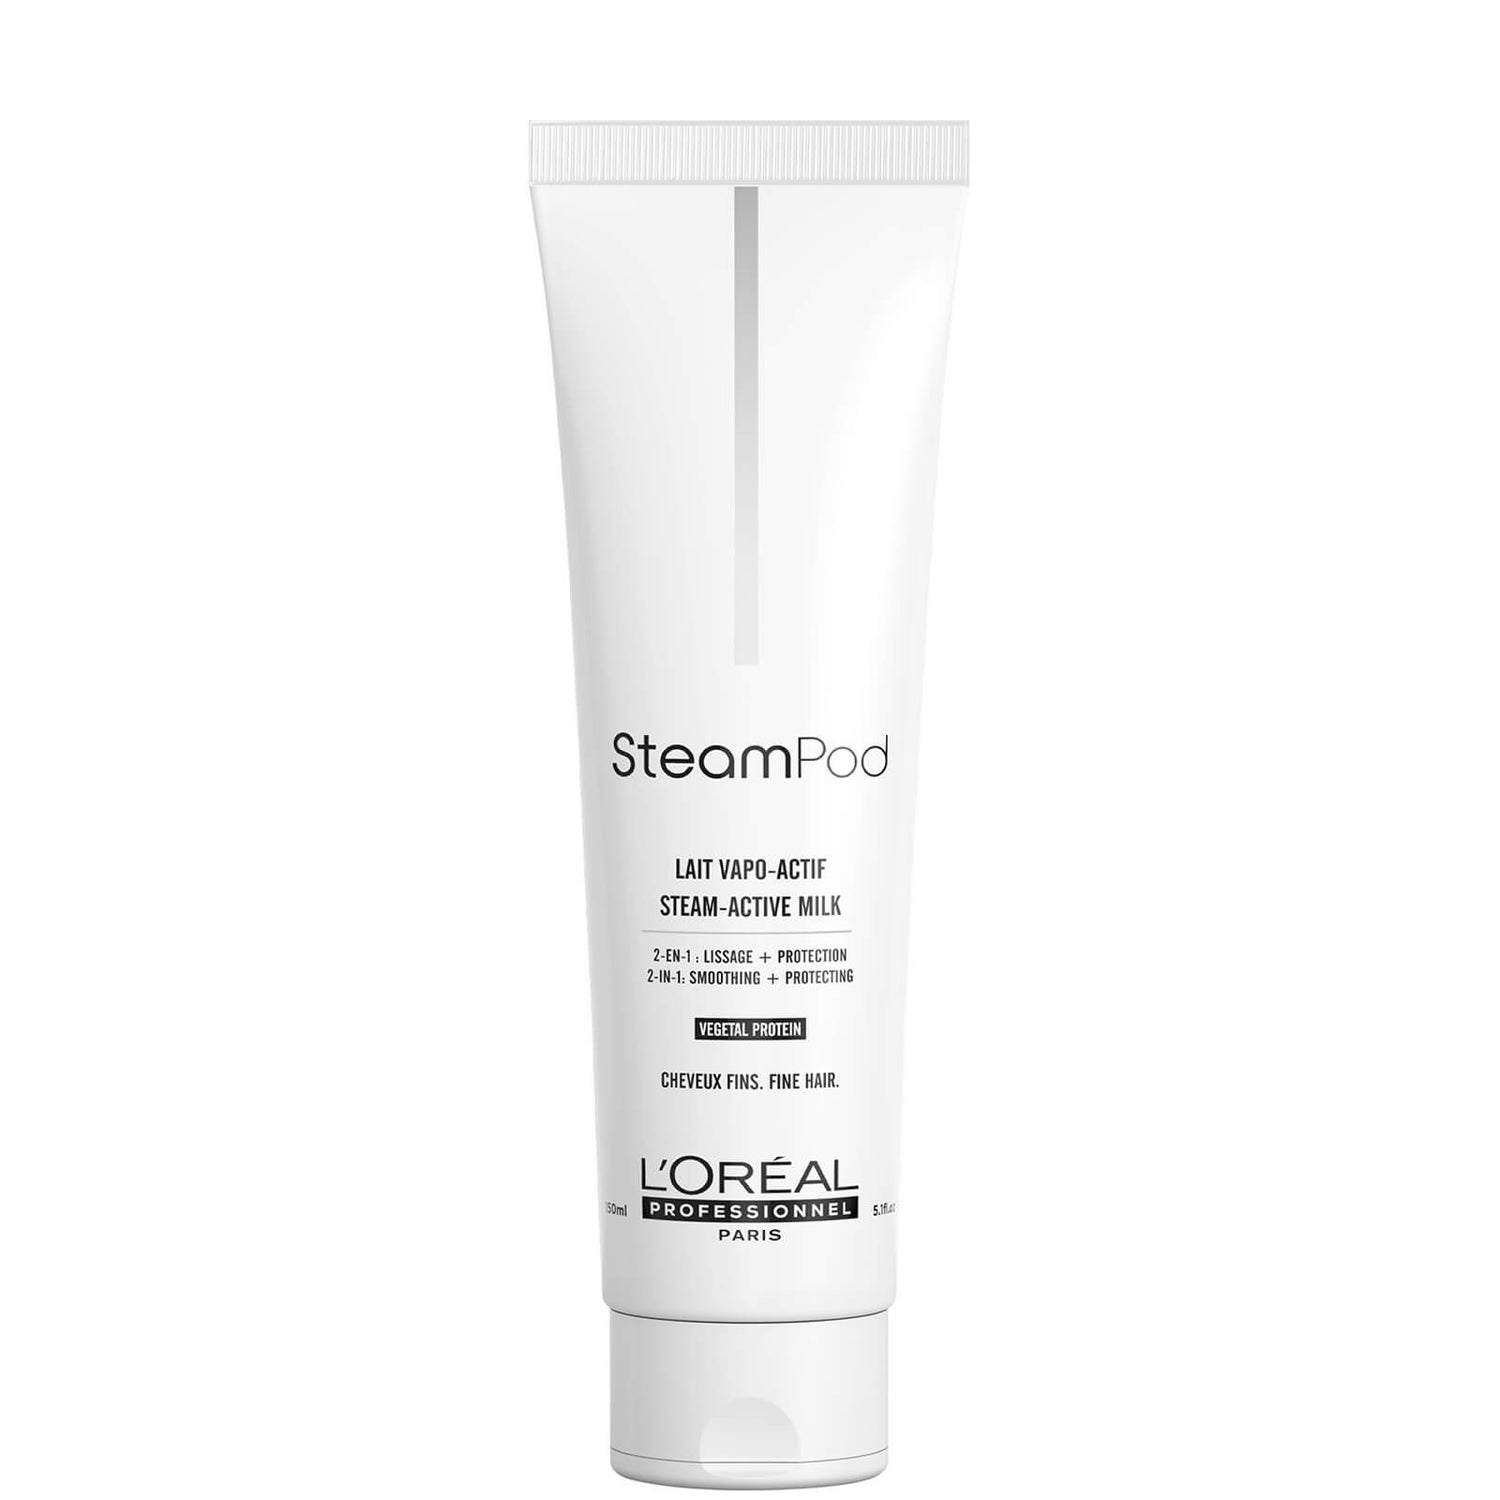 L'Oreal Professionnel Steampod Sensitised Cream (150ml)